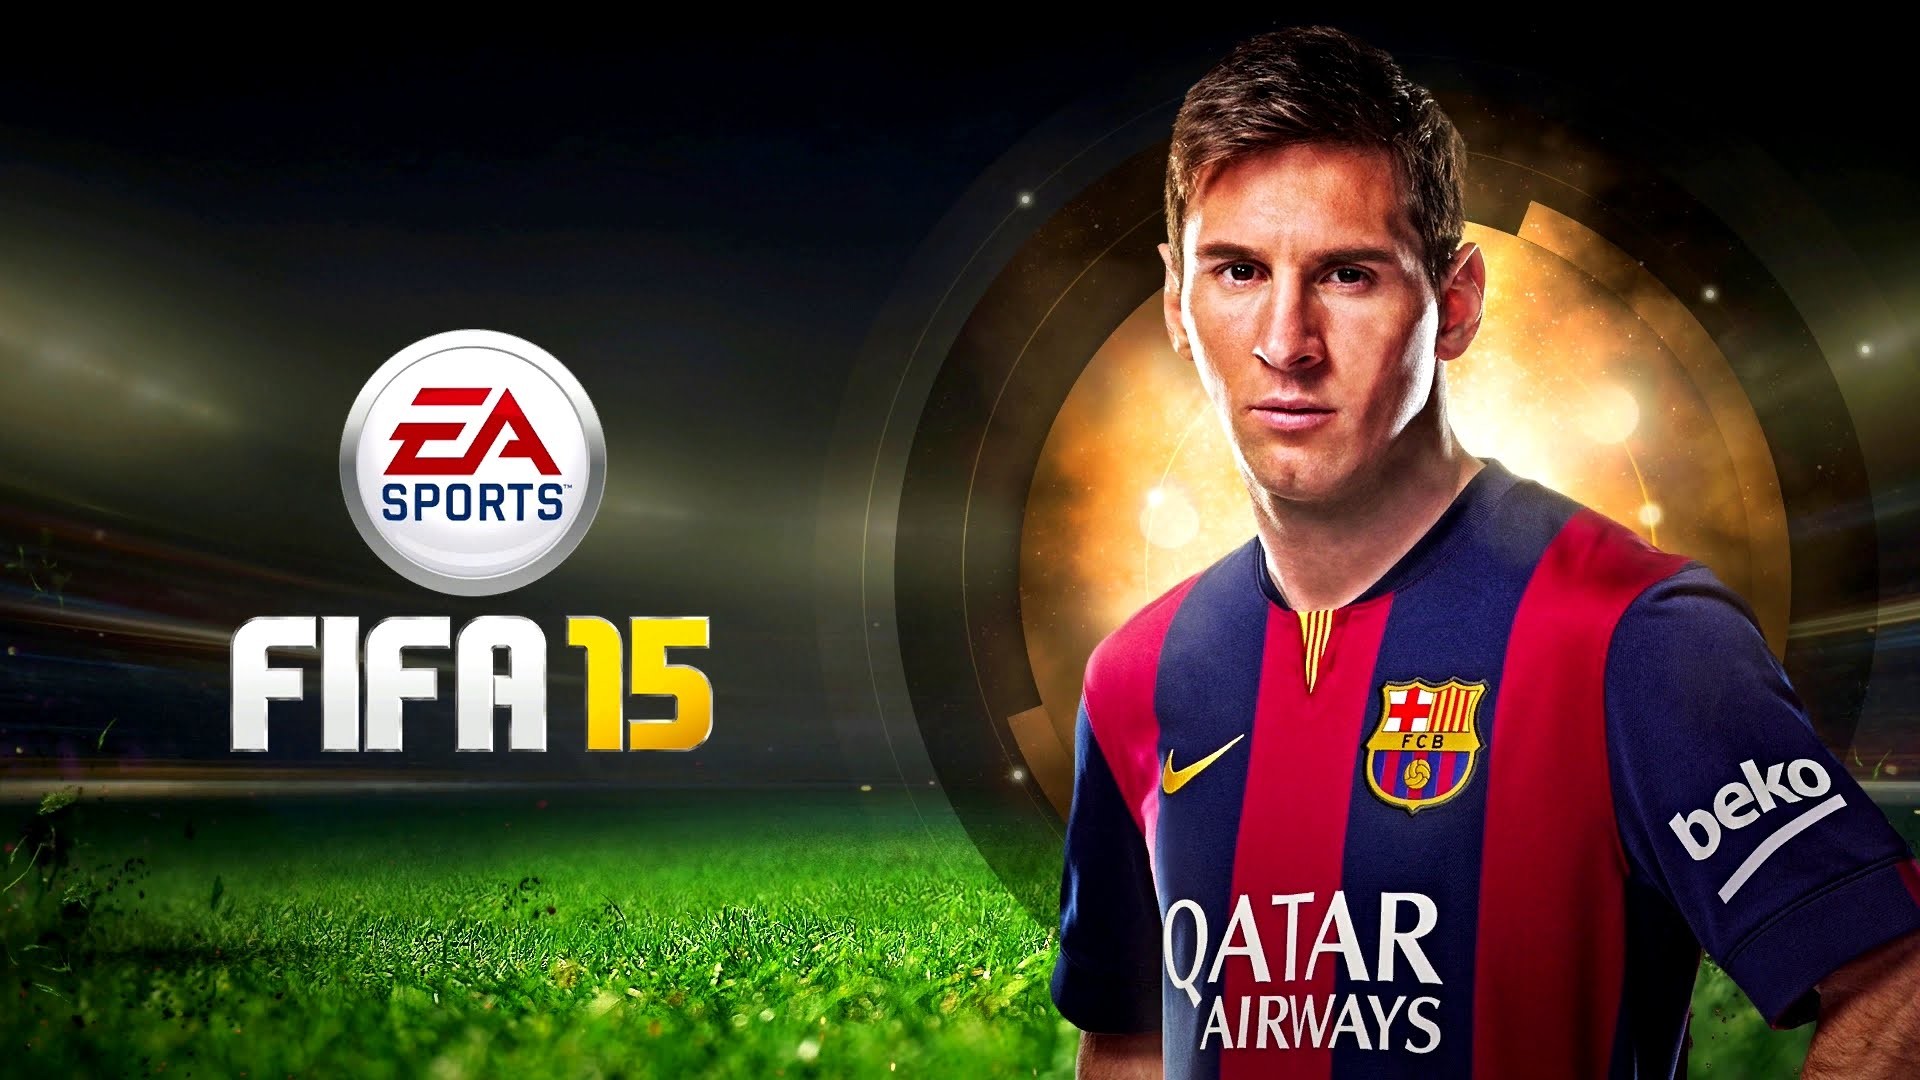 Fifa 15 Ultimate Team - Messi Fifa 15 Cover - HD Wallpaper 